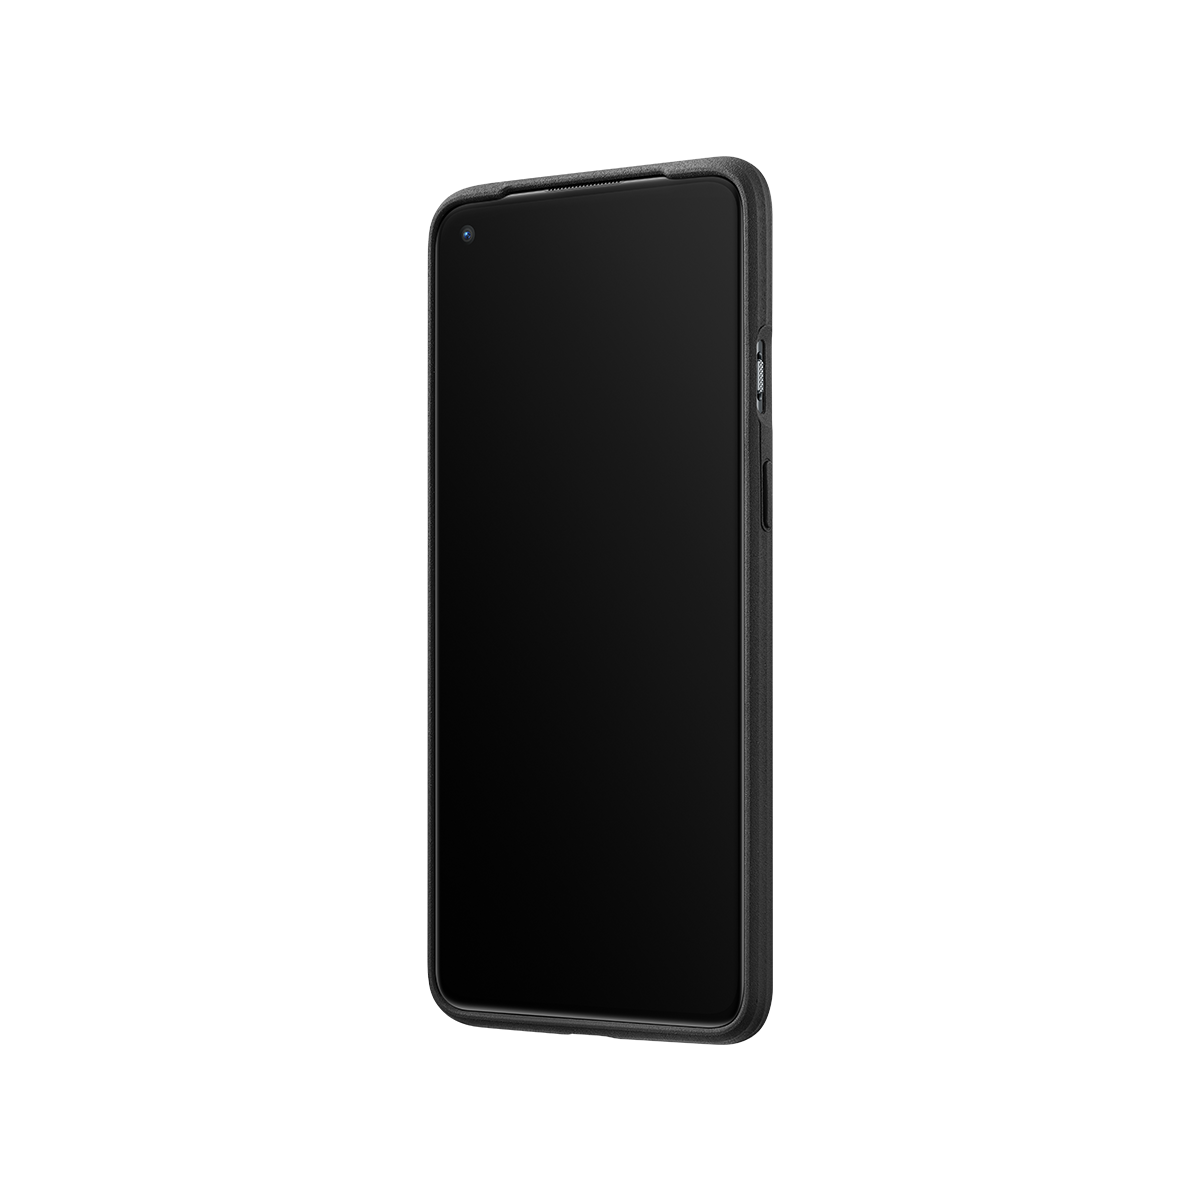 OnePlus Sandstone Bumper kryt pro OnePlus 8T sandstone black